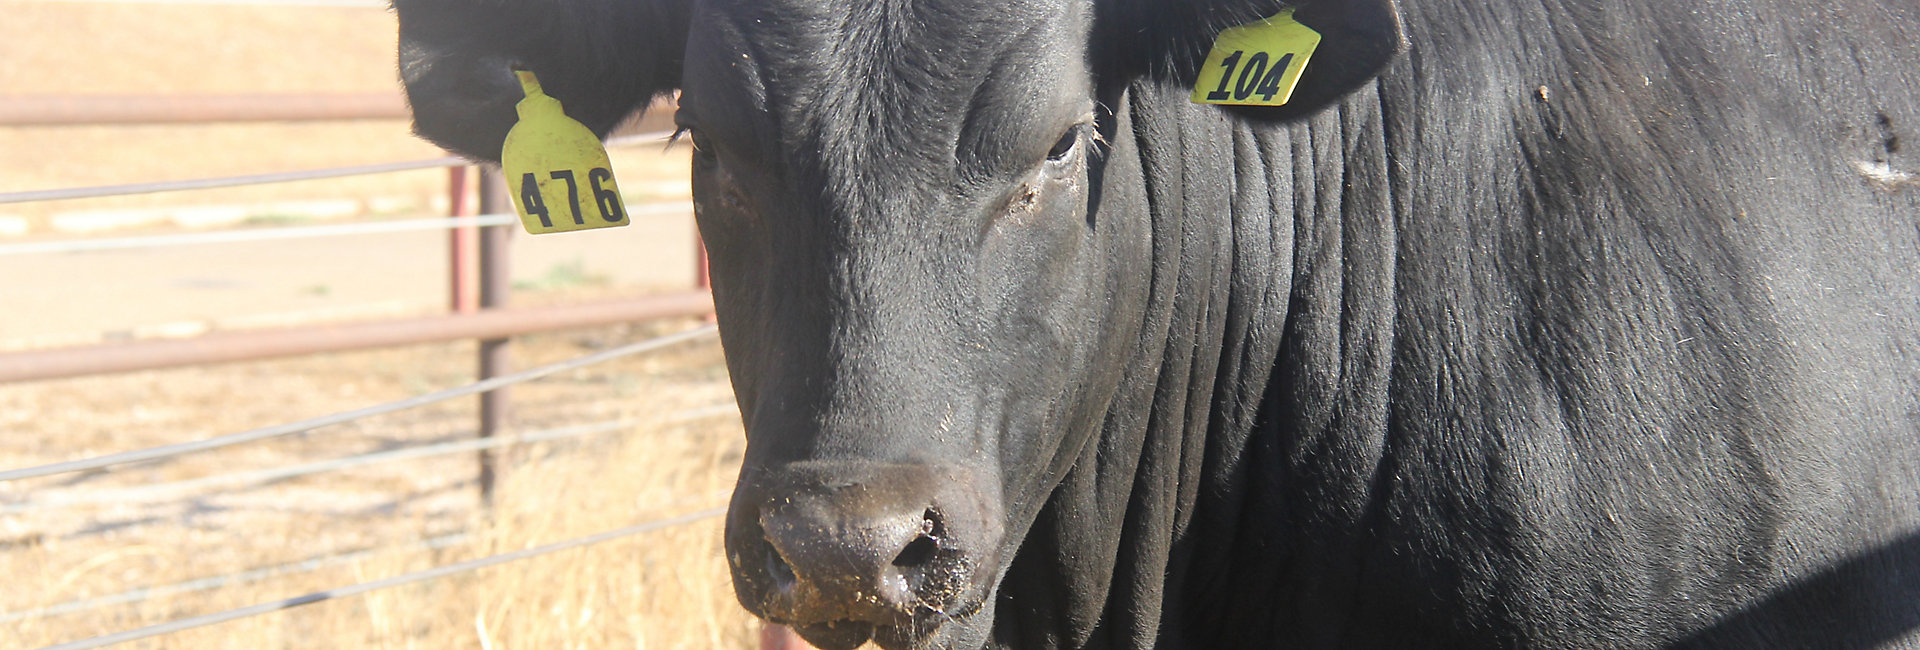 Soluciones de nutrición animal de Kemin para ganado de engorda | Nutrición  y salud animal con Kemin